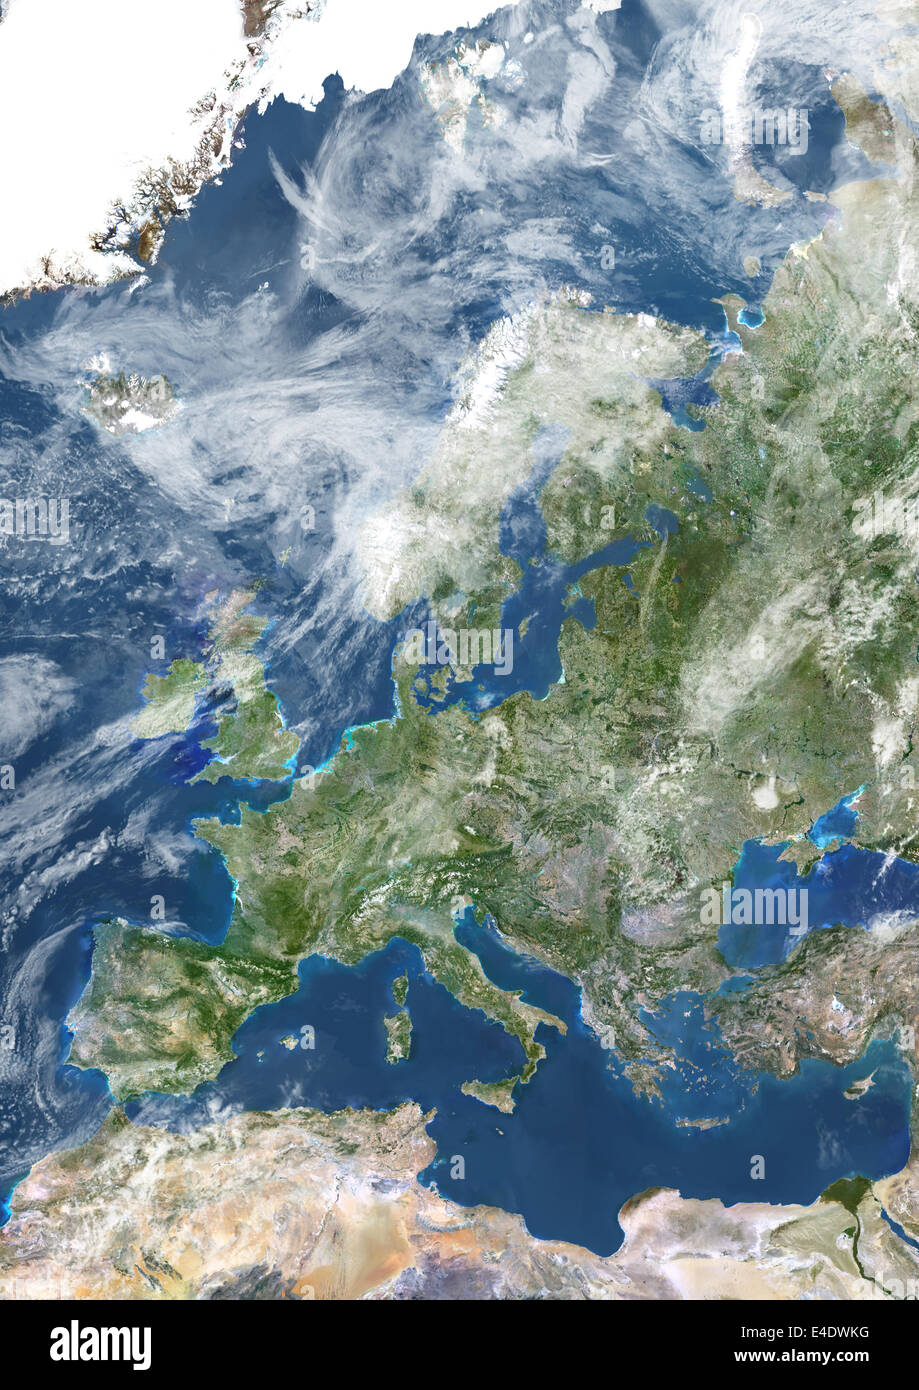 L'Europe avec la couverture nuageuse, True Color Image satellite. La couleur vraie image satellite de l'Europe avec la couverture nuageuse. Cette image je Banque D'Images